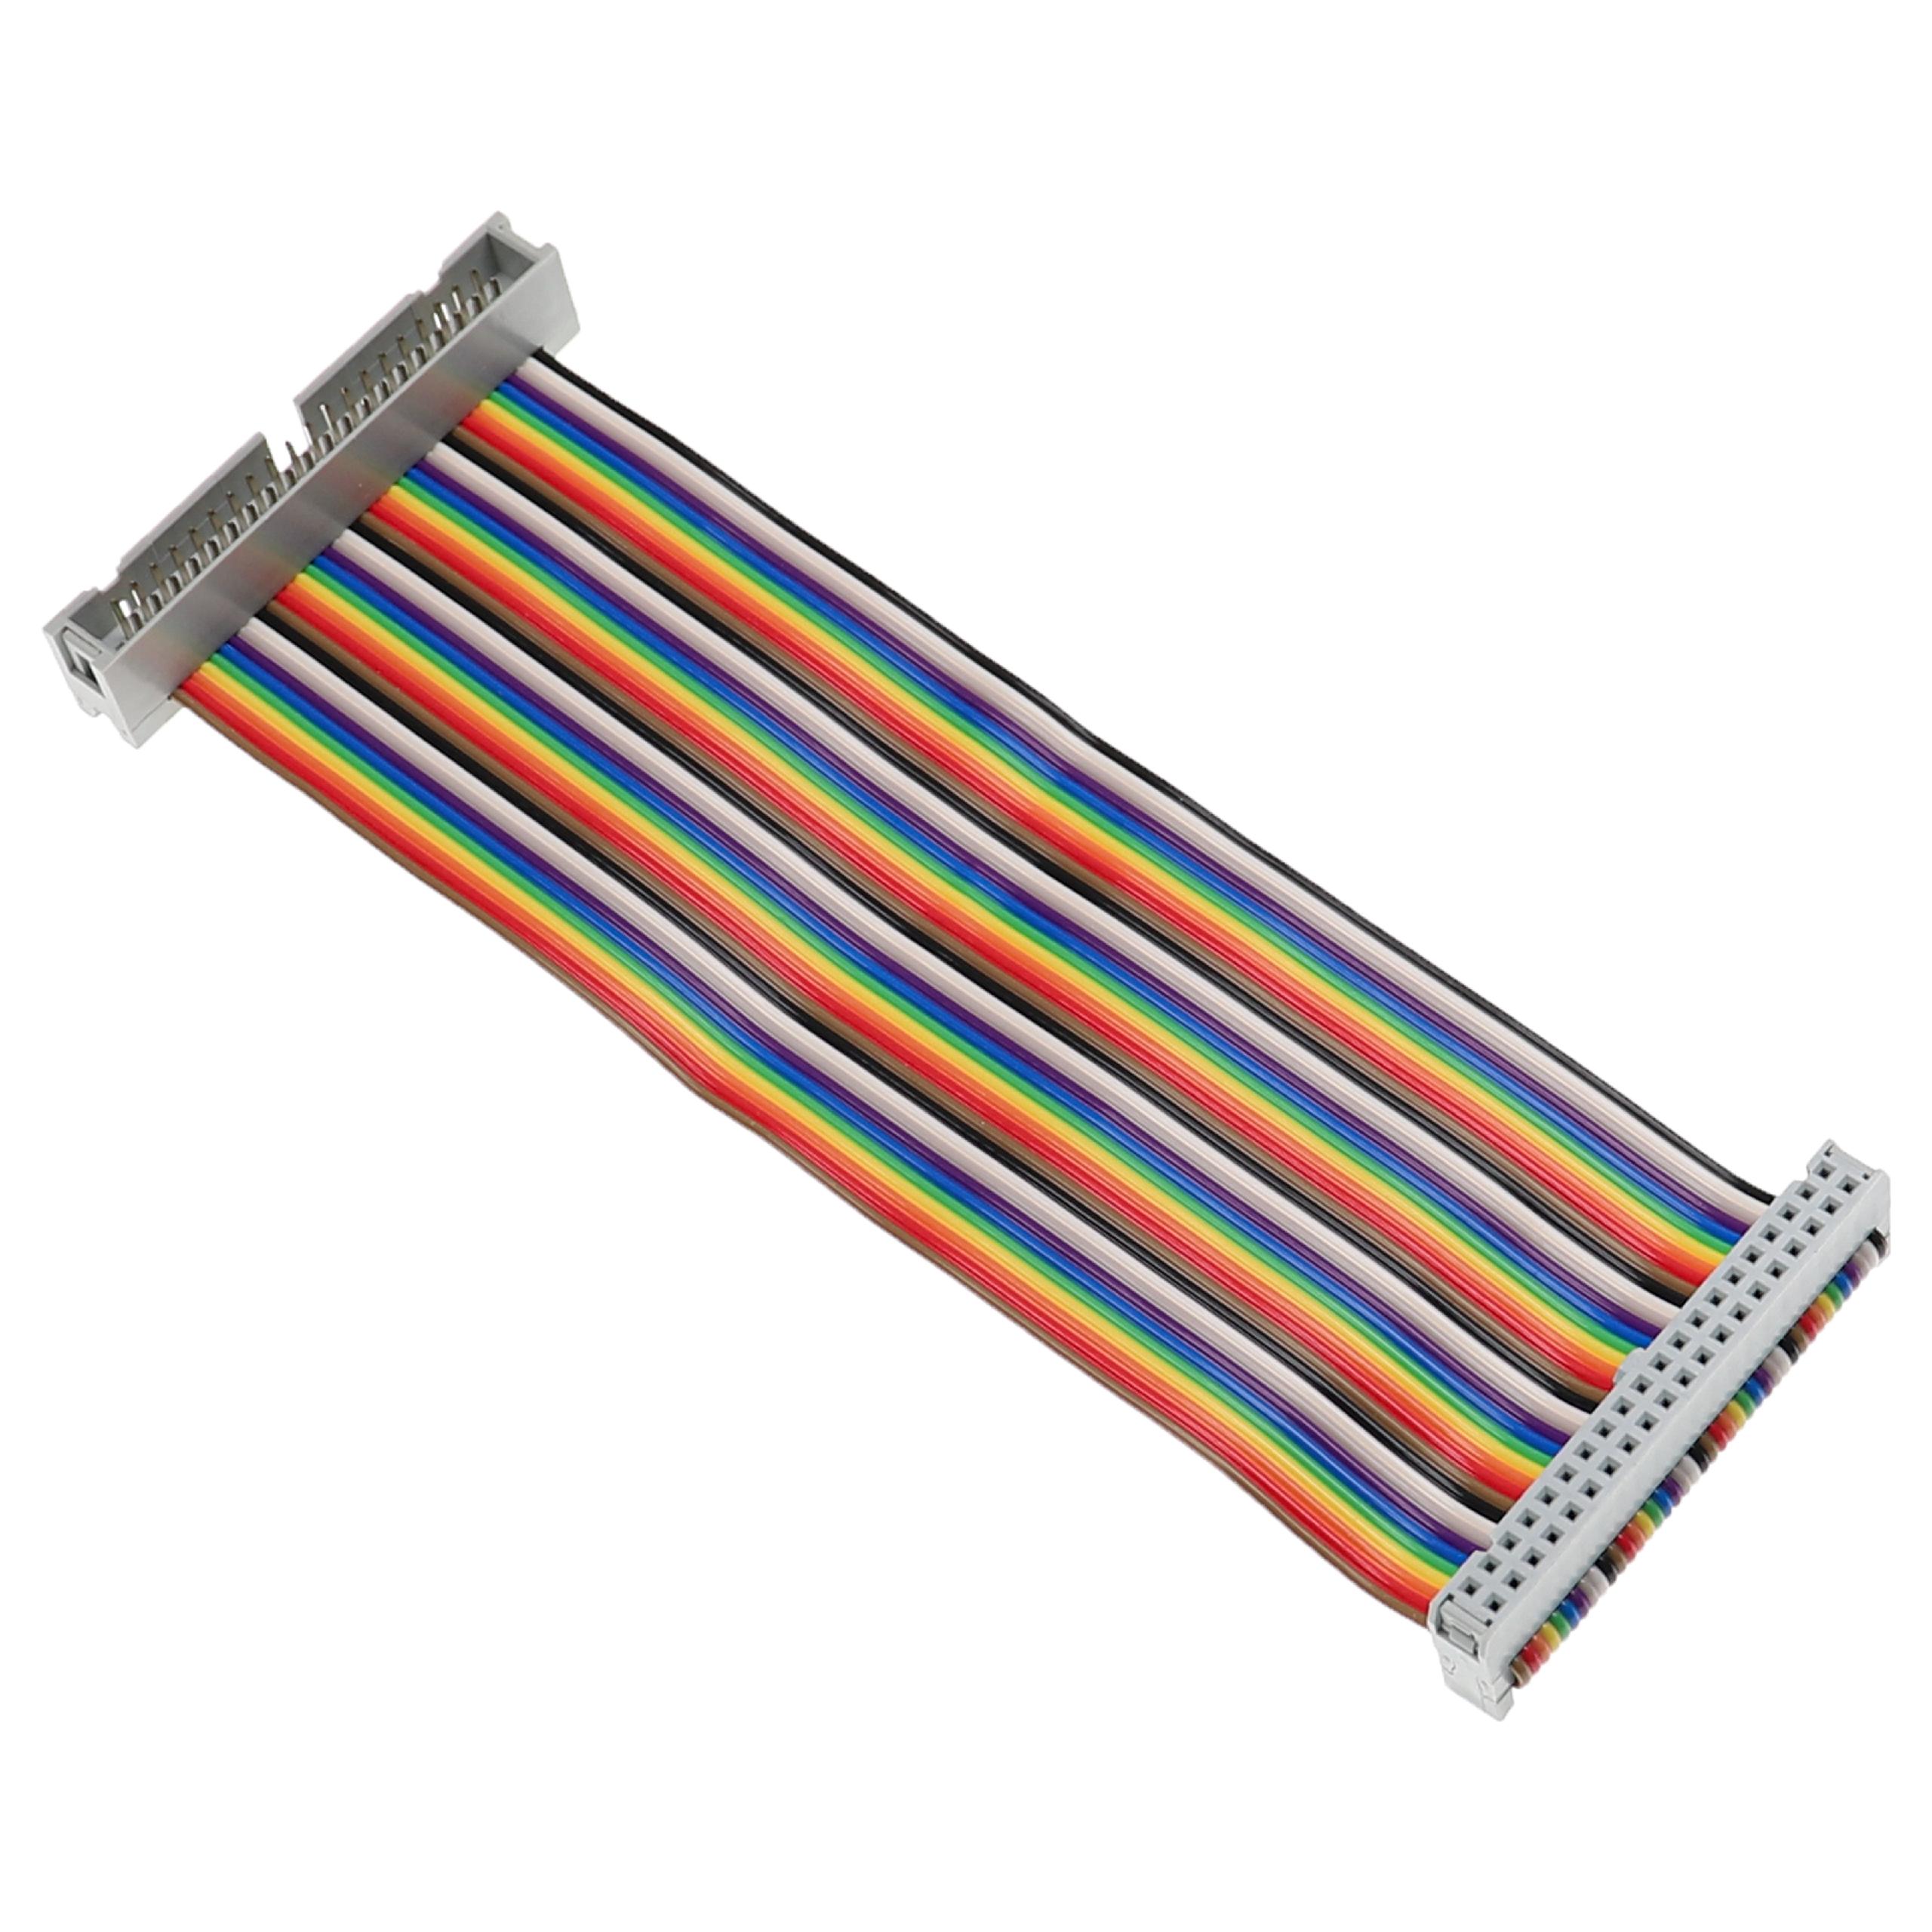 GPIO Kabel 40 Pin passend für Raspberry Pi - GPIO Verlängerung Mehrfarbig, 15 cm